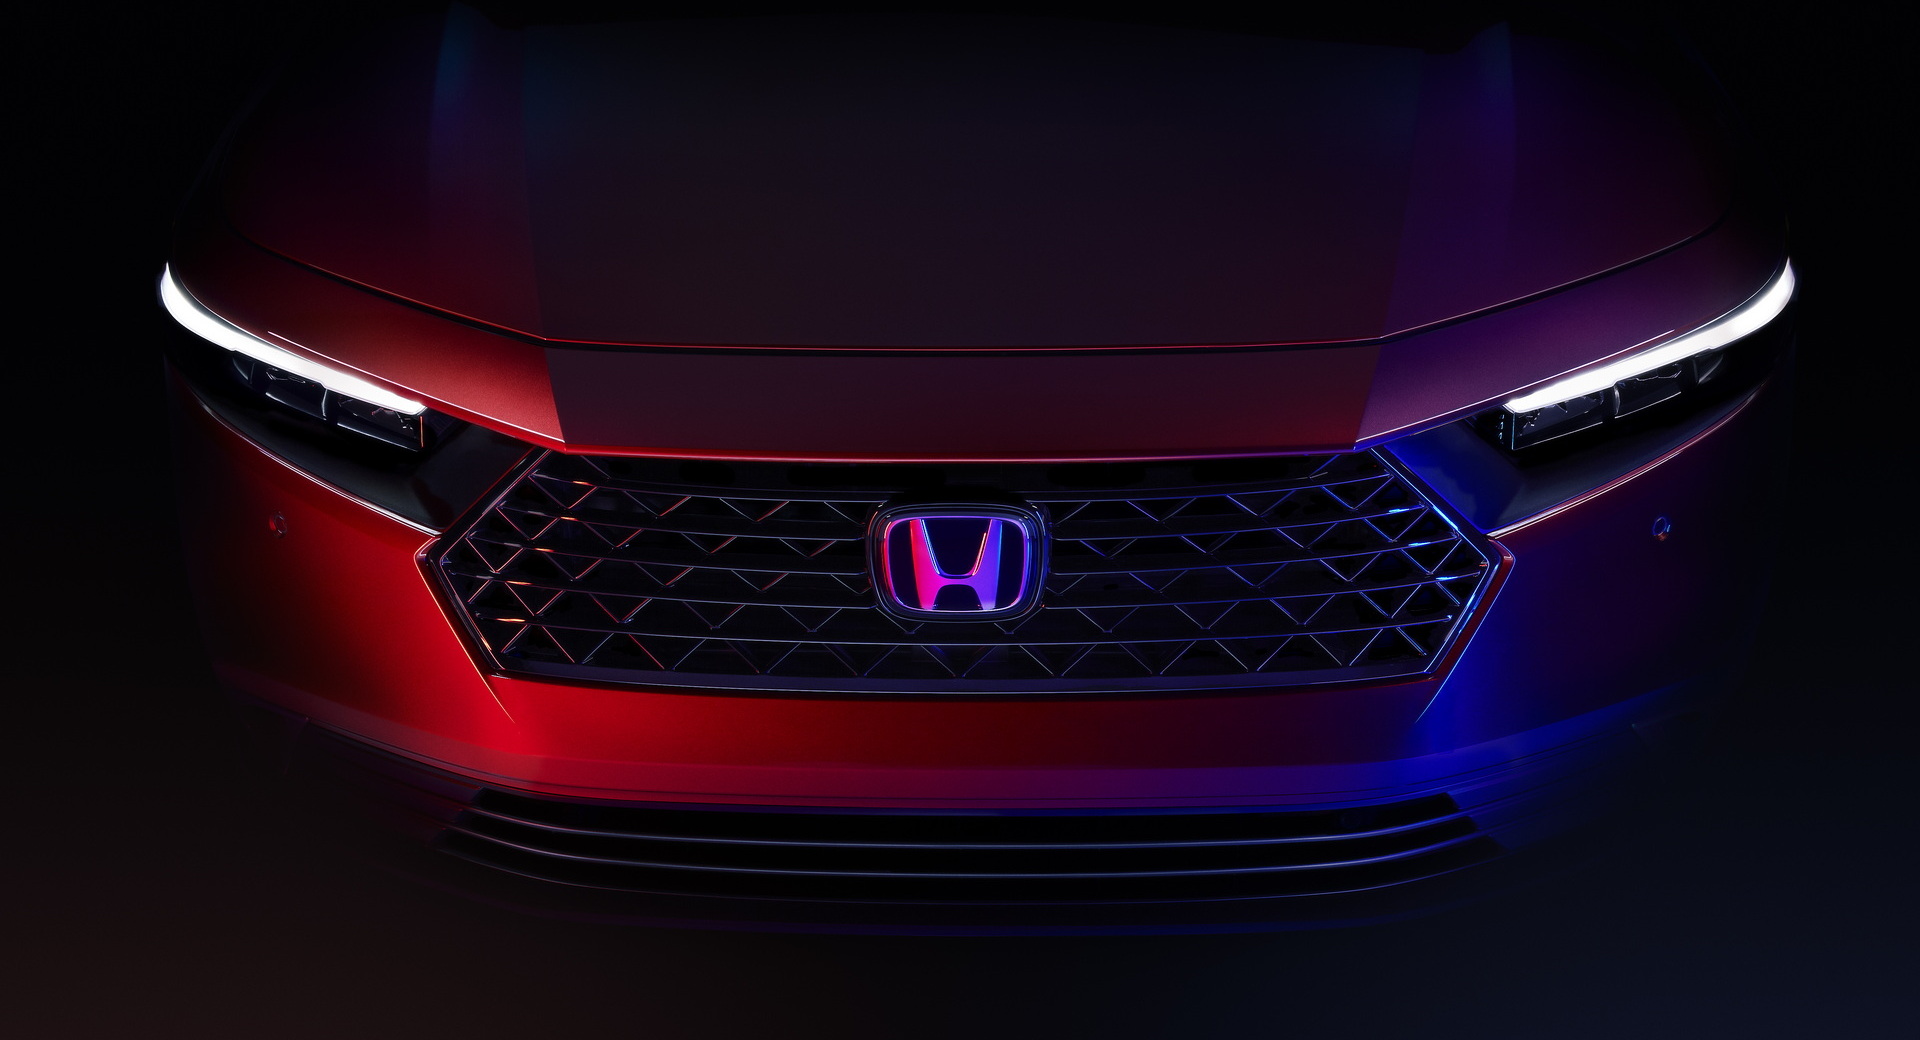 Xem trước thiết kế hoàn chỉnh của Honda Accord 2023 Honda tung ảnh nhá hàng mẫu Accord 2023 với kiểu dáng bắt mắt, nâng cấp công nghệ 2023-honda-accord-teaser-1.jpg